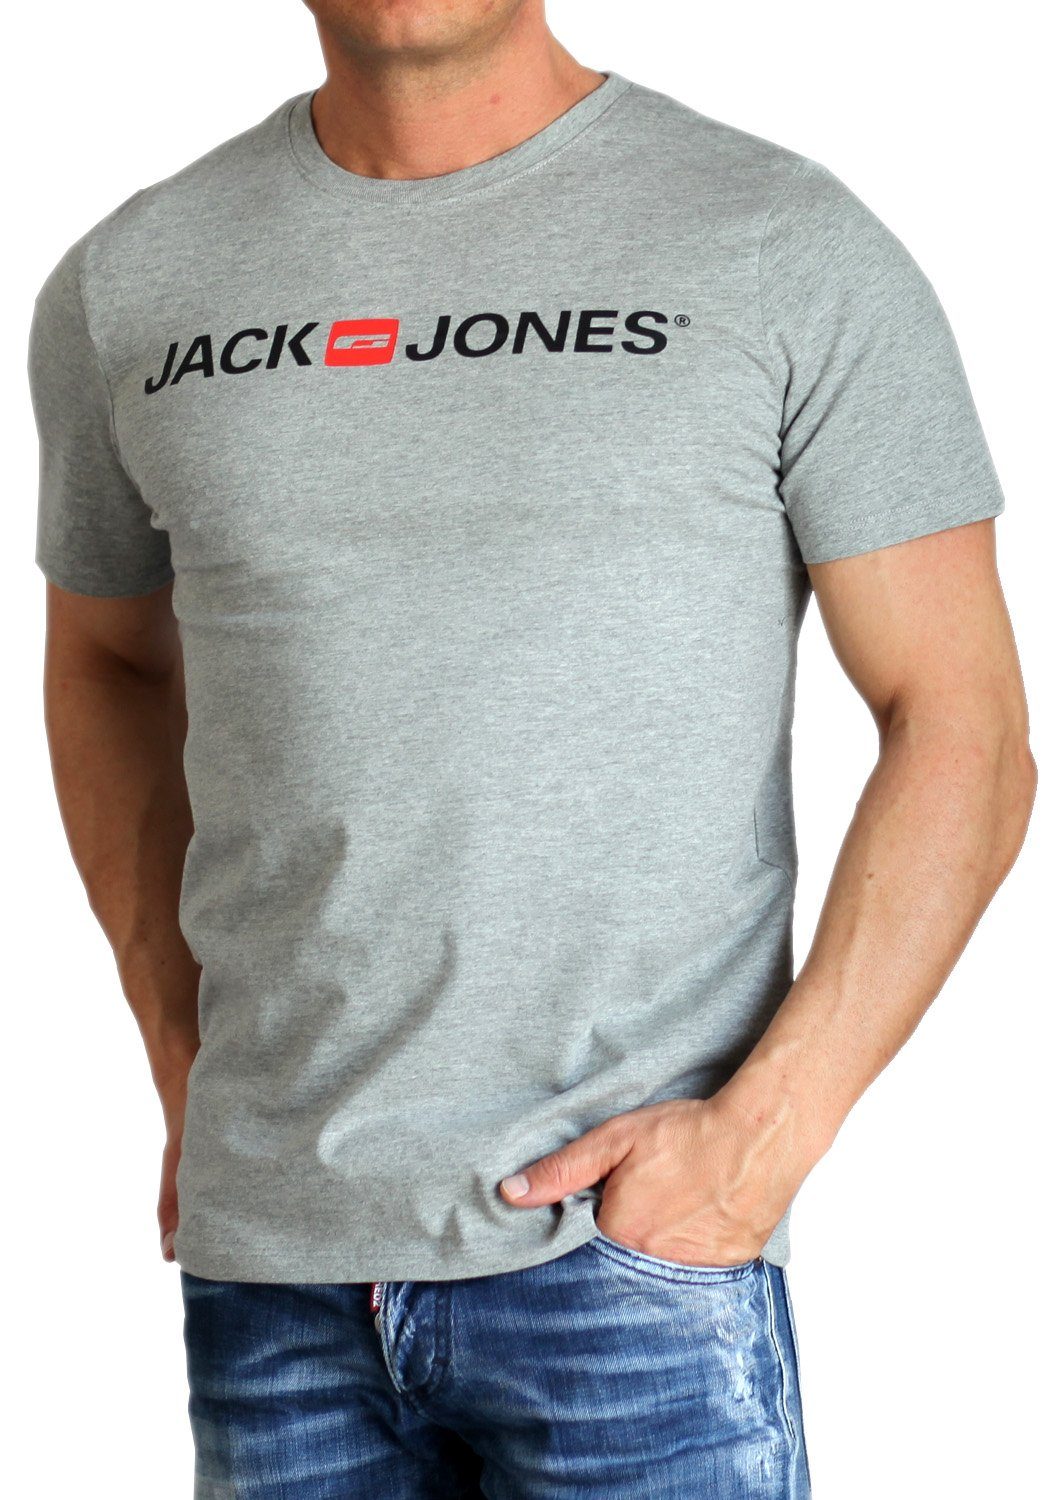 Baumwolle Light Print-Shirt mit Grey & Rundhalsausschnitt, Jack Jones aus